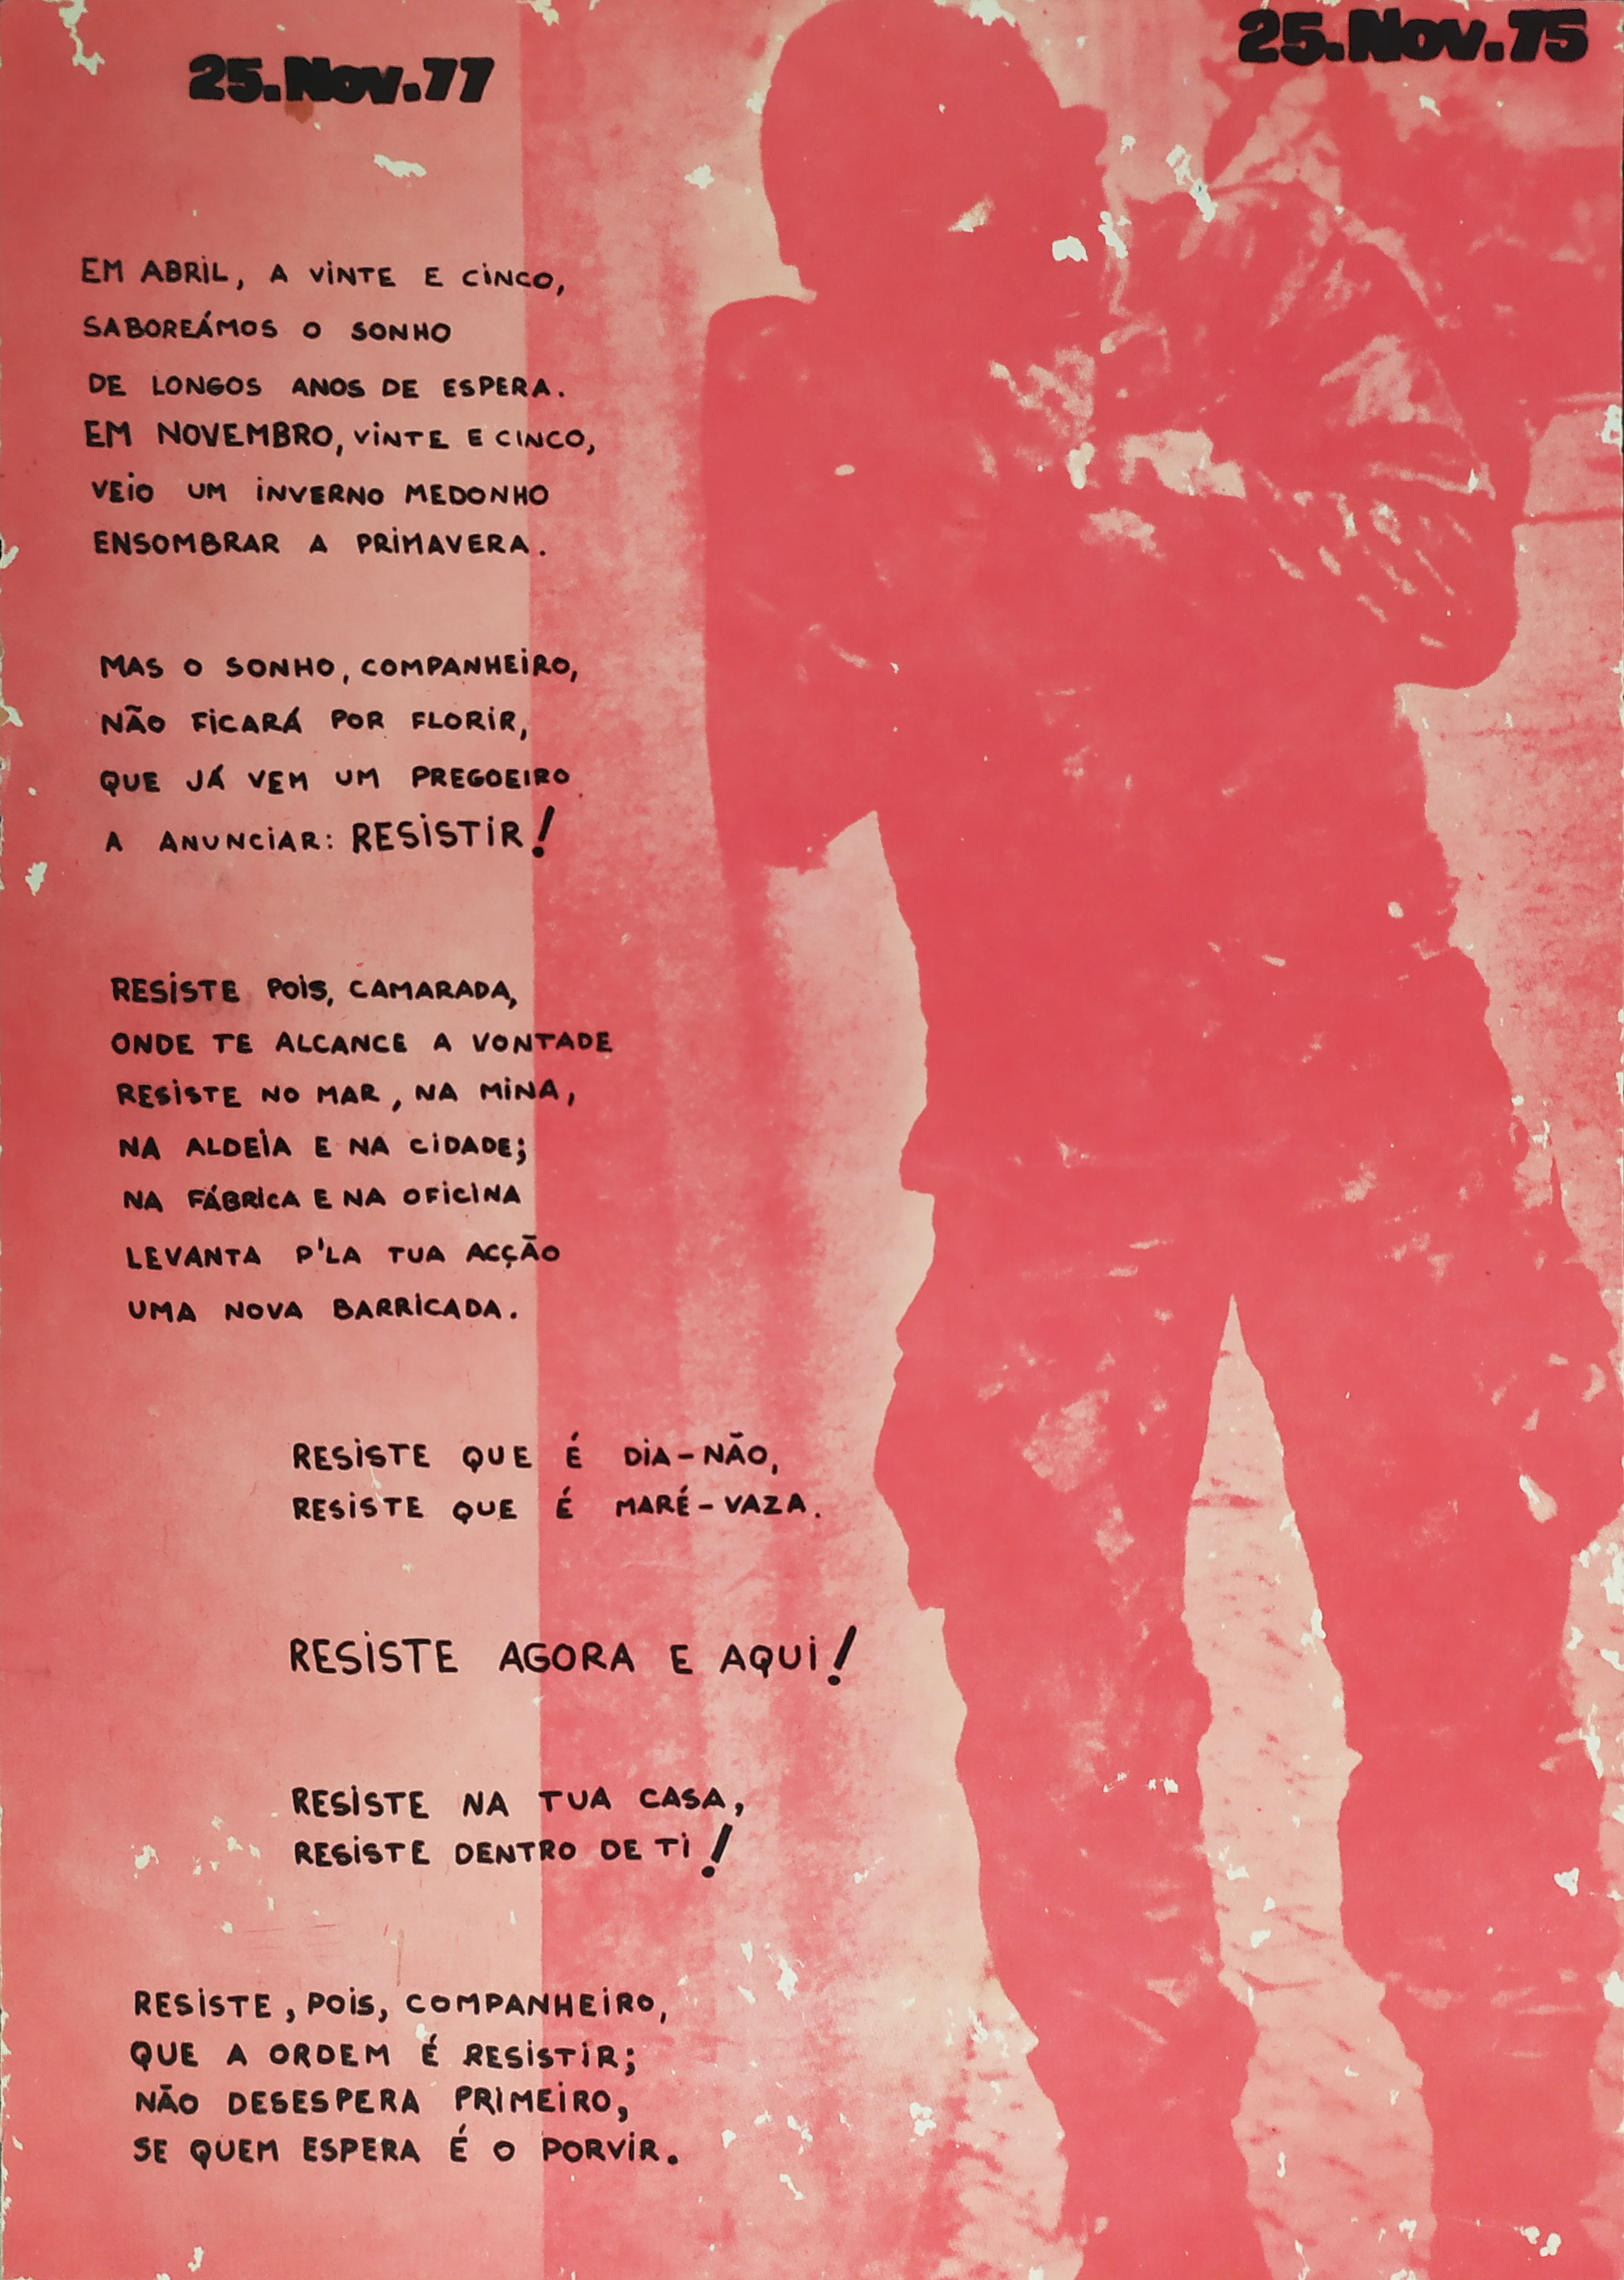 Cartaz sobre o 25 de novembro de 1975 (1977)